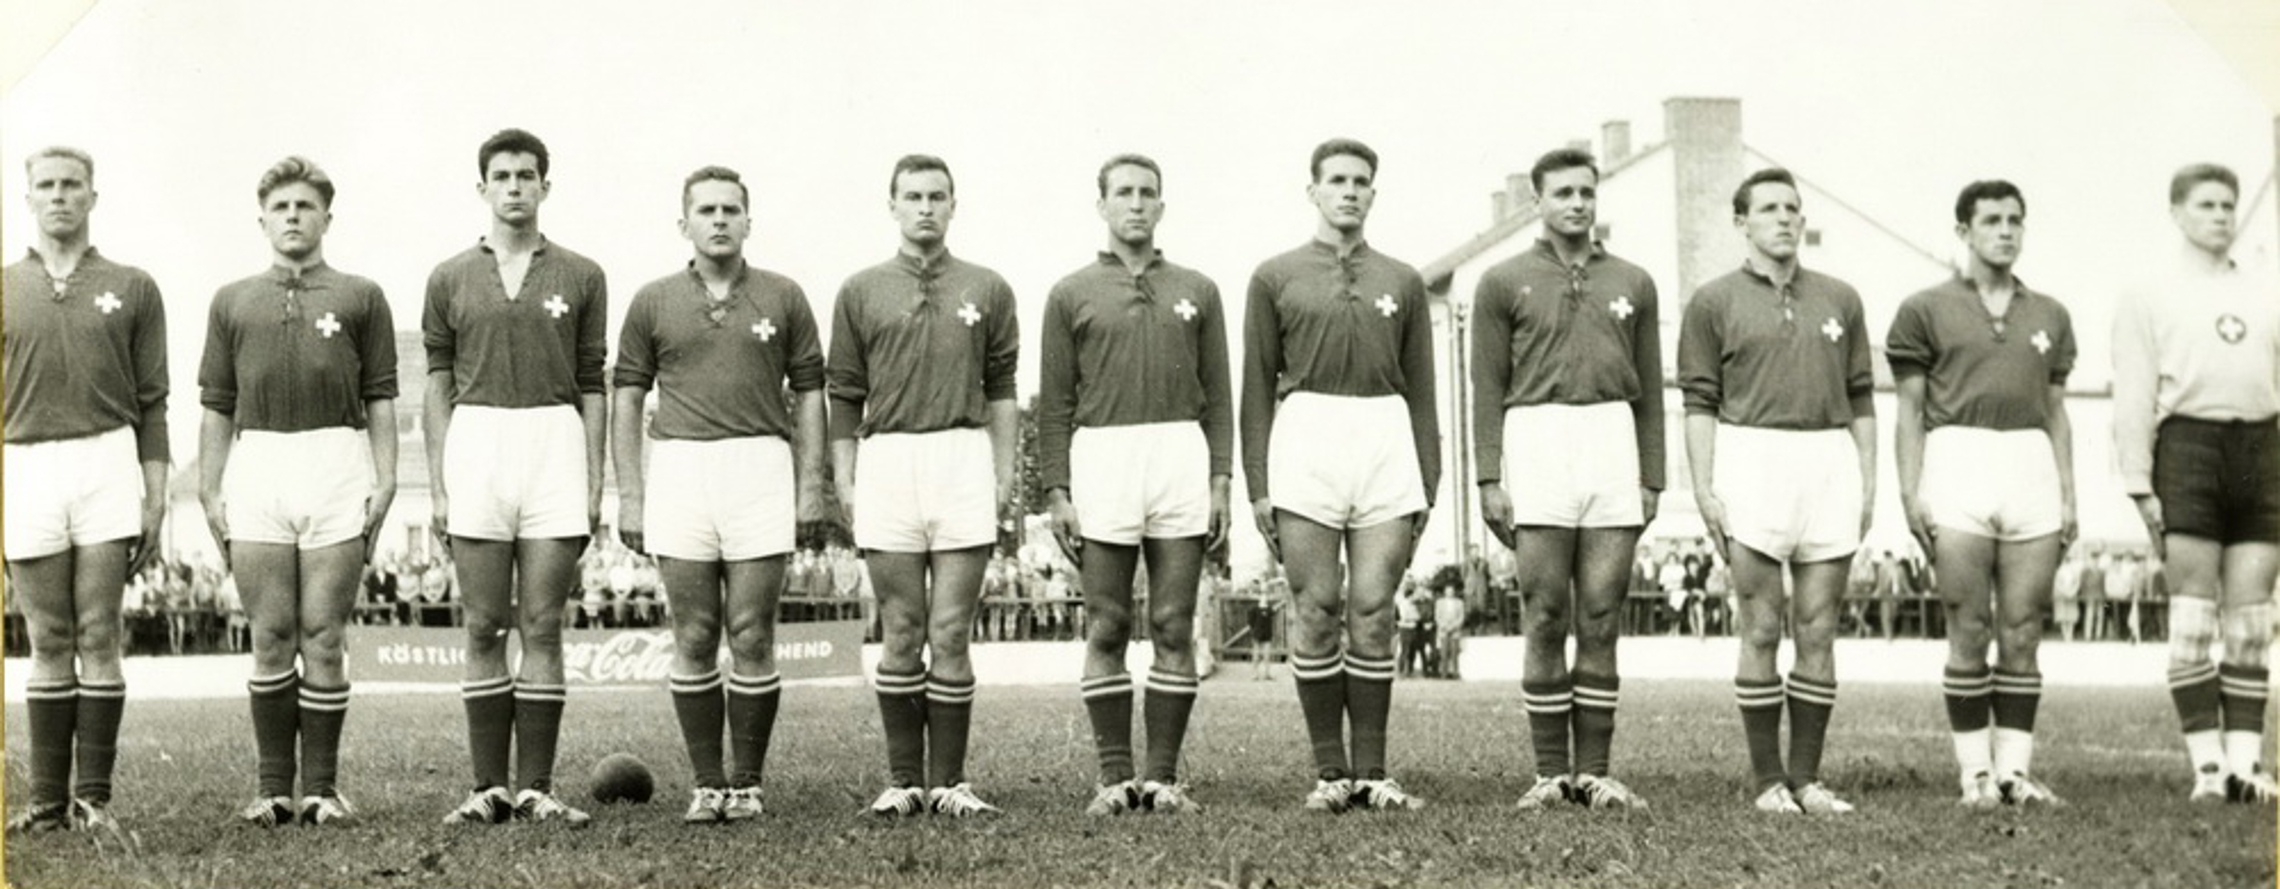 18.6.1959 Schweiz - Rumänien 9:14 (7:4) Baden bei Wien, 3000 Zuschauer, Schiedsrichter Knudsen, DEN